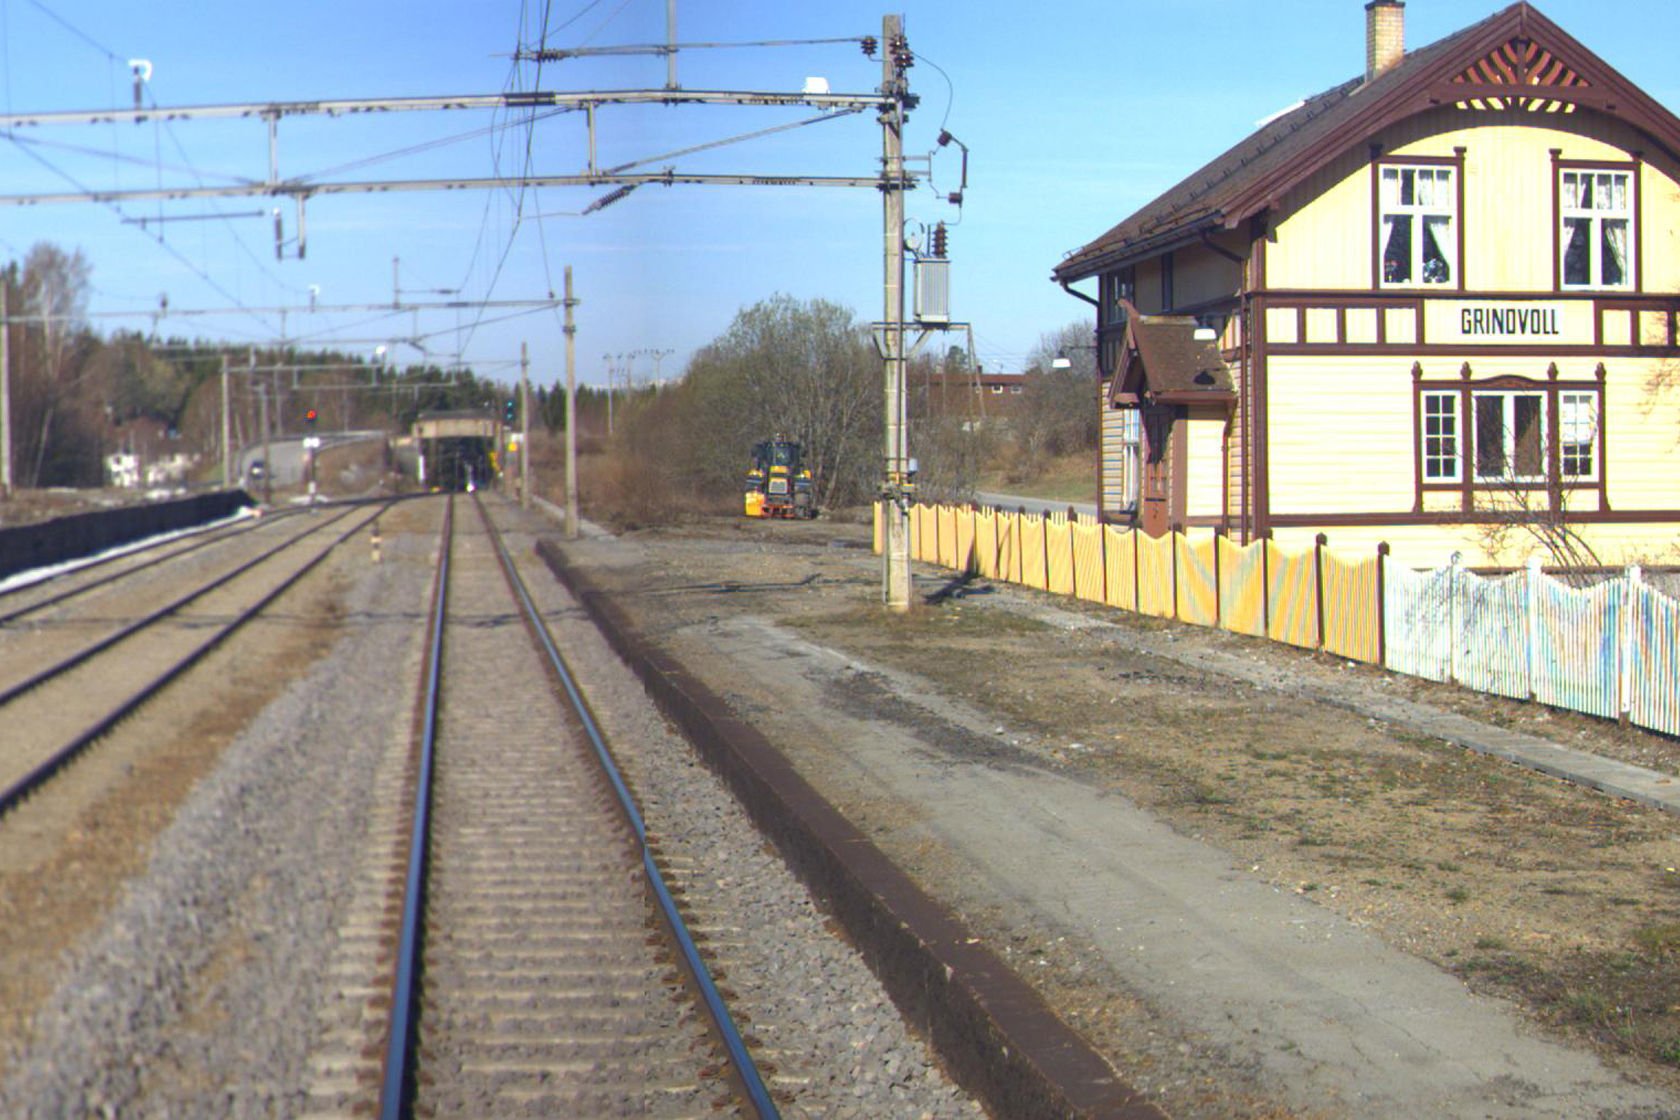 Spor og stasjonsbygning på Grindvoll stasjon